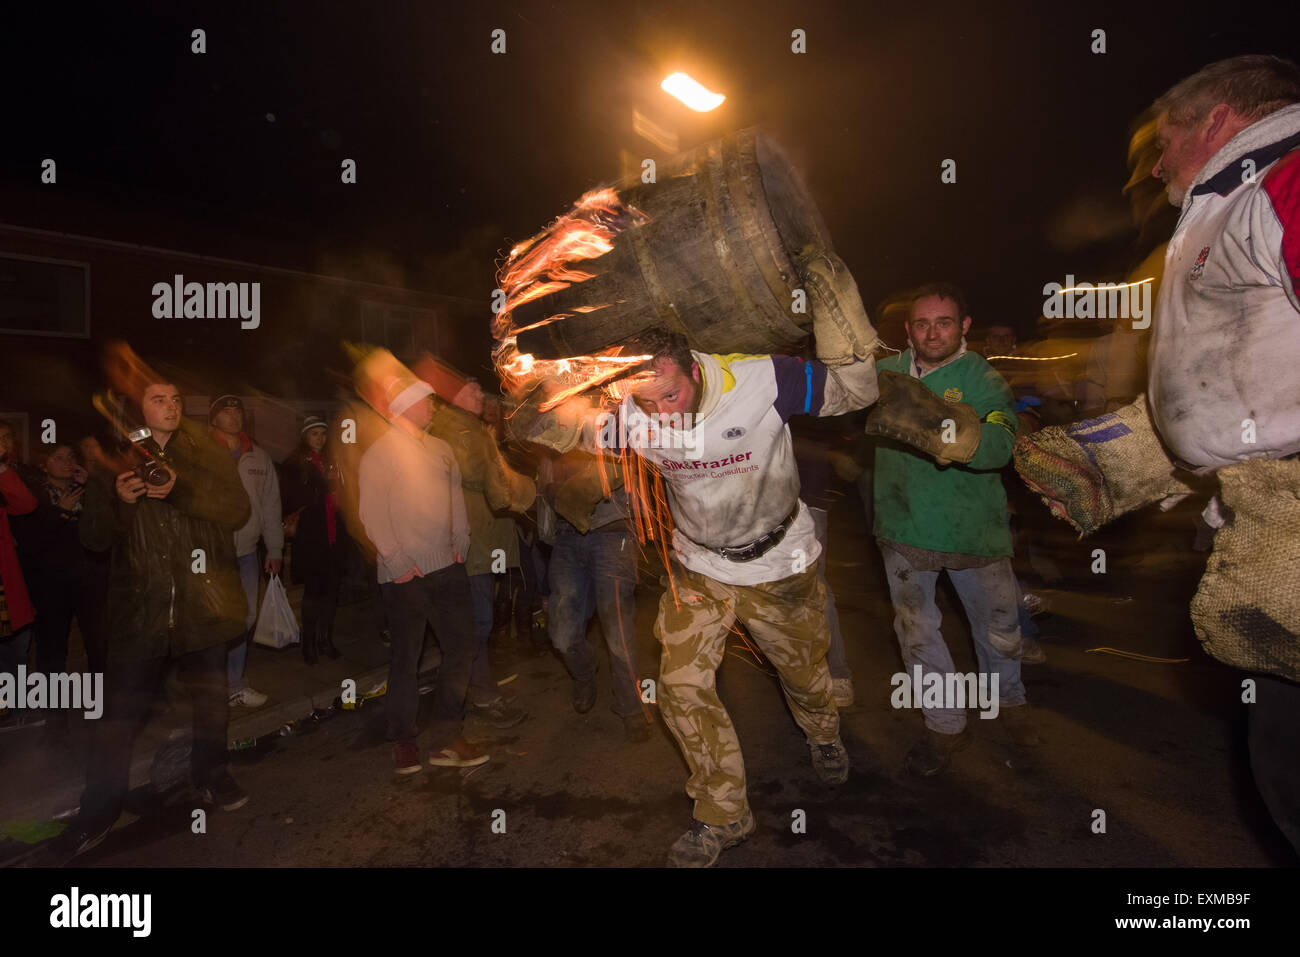 Le baril s'effondre en cours dans la rue pour marquer le Bonfire Night, 5 novembre, à la tar de barils festival, Honiton, Devon, Angleterre Banque D'Images